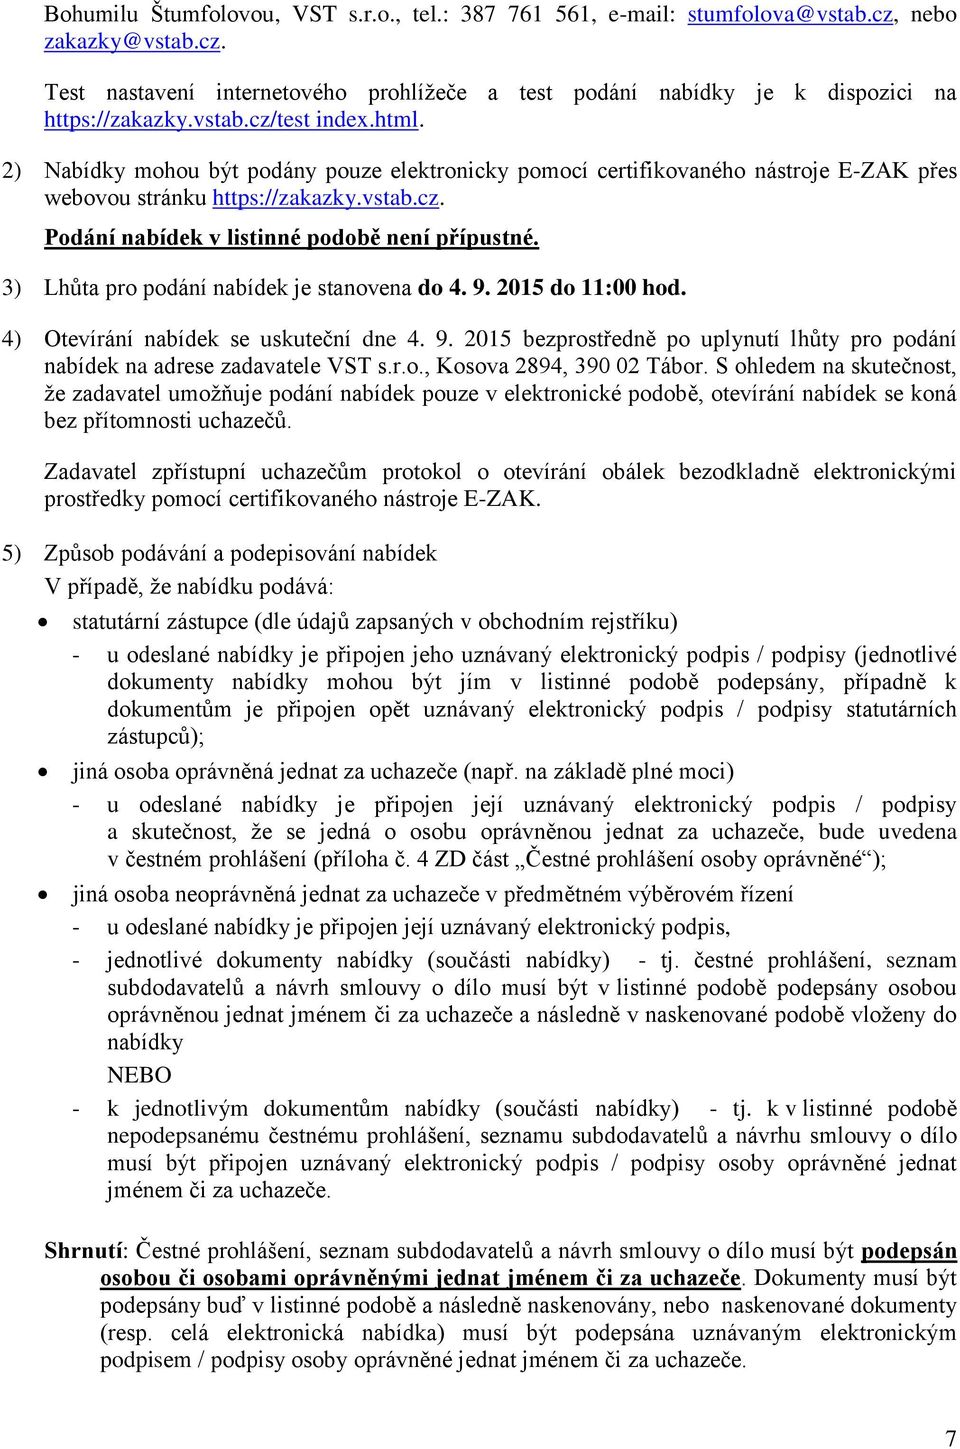 3) Lhůta pro podání nabídek je stanovena do 4. 9. 2015 do 11:00 hod. 4) Otevírání nabídek se uskuteční dne 4. 9. 2015 bezprostředně po uplynutí lhůty pro podání nabídek na adrese zadavatele VST s.r.o., Kosova 2894, 390 02 Tábor.